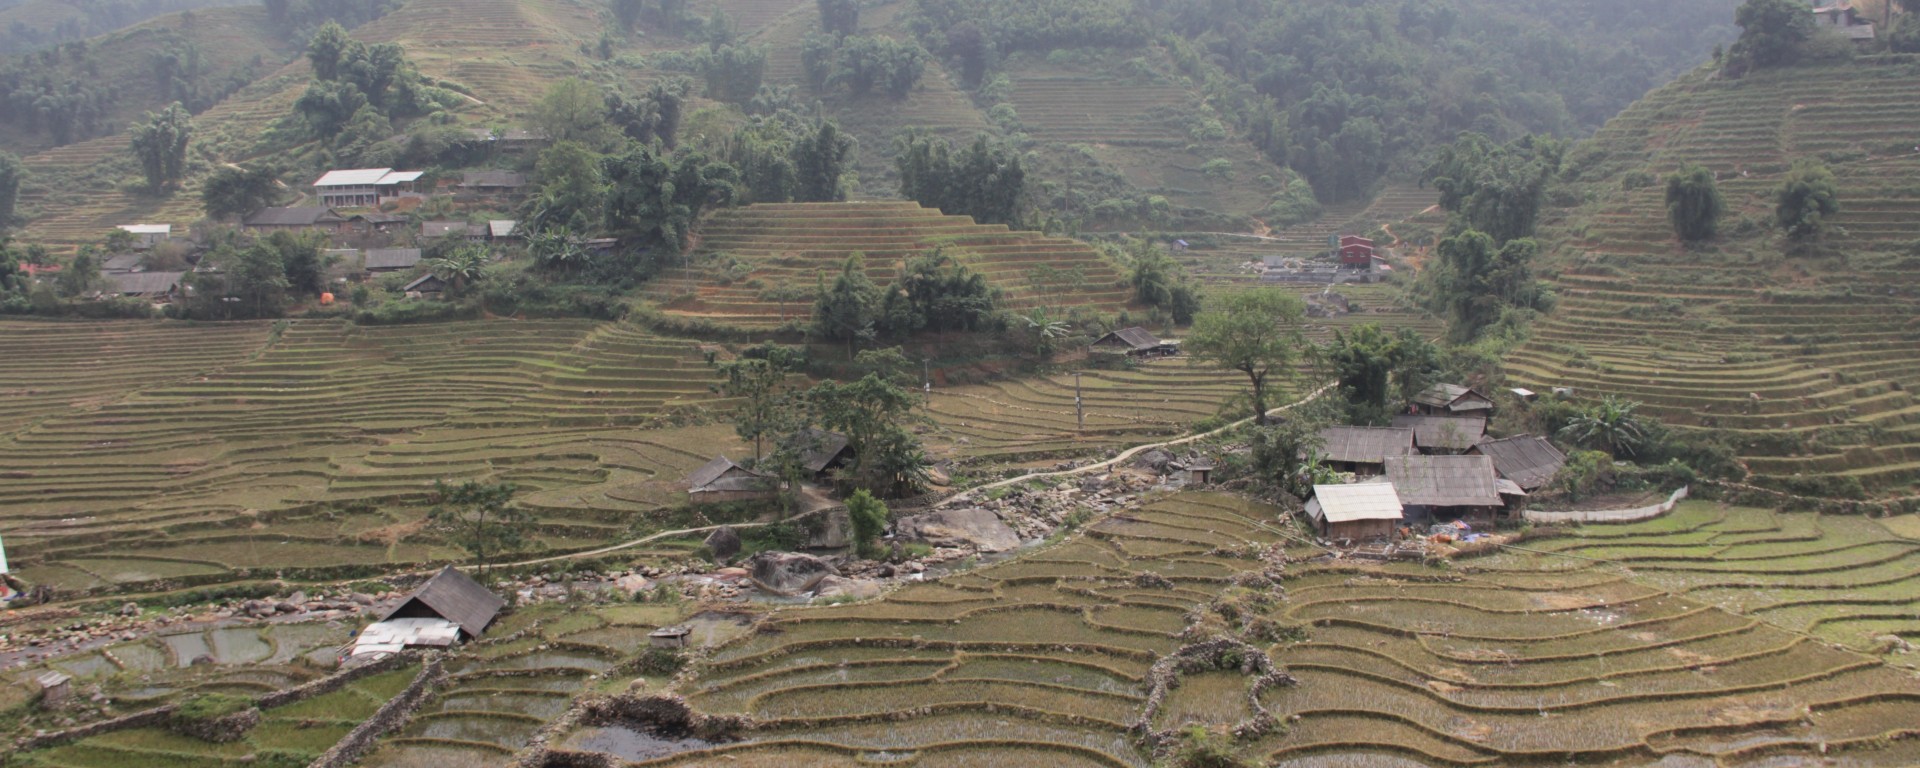 Les rizières coupées dans les montagnes au nord du Vietnam (